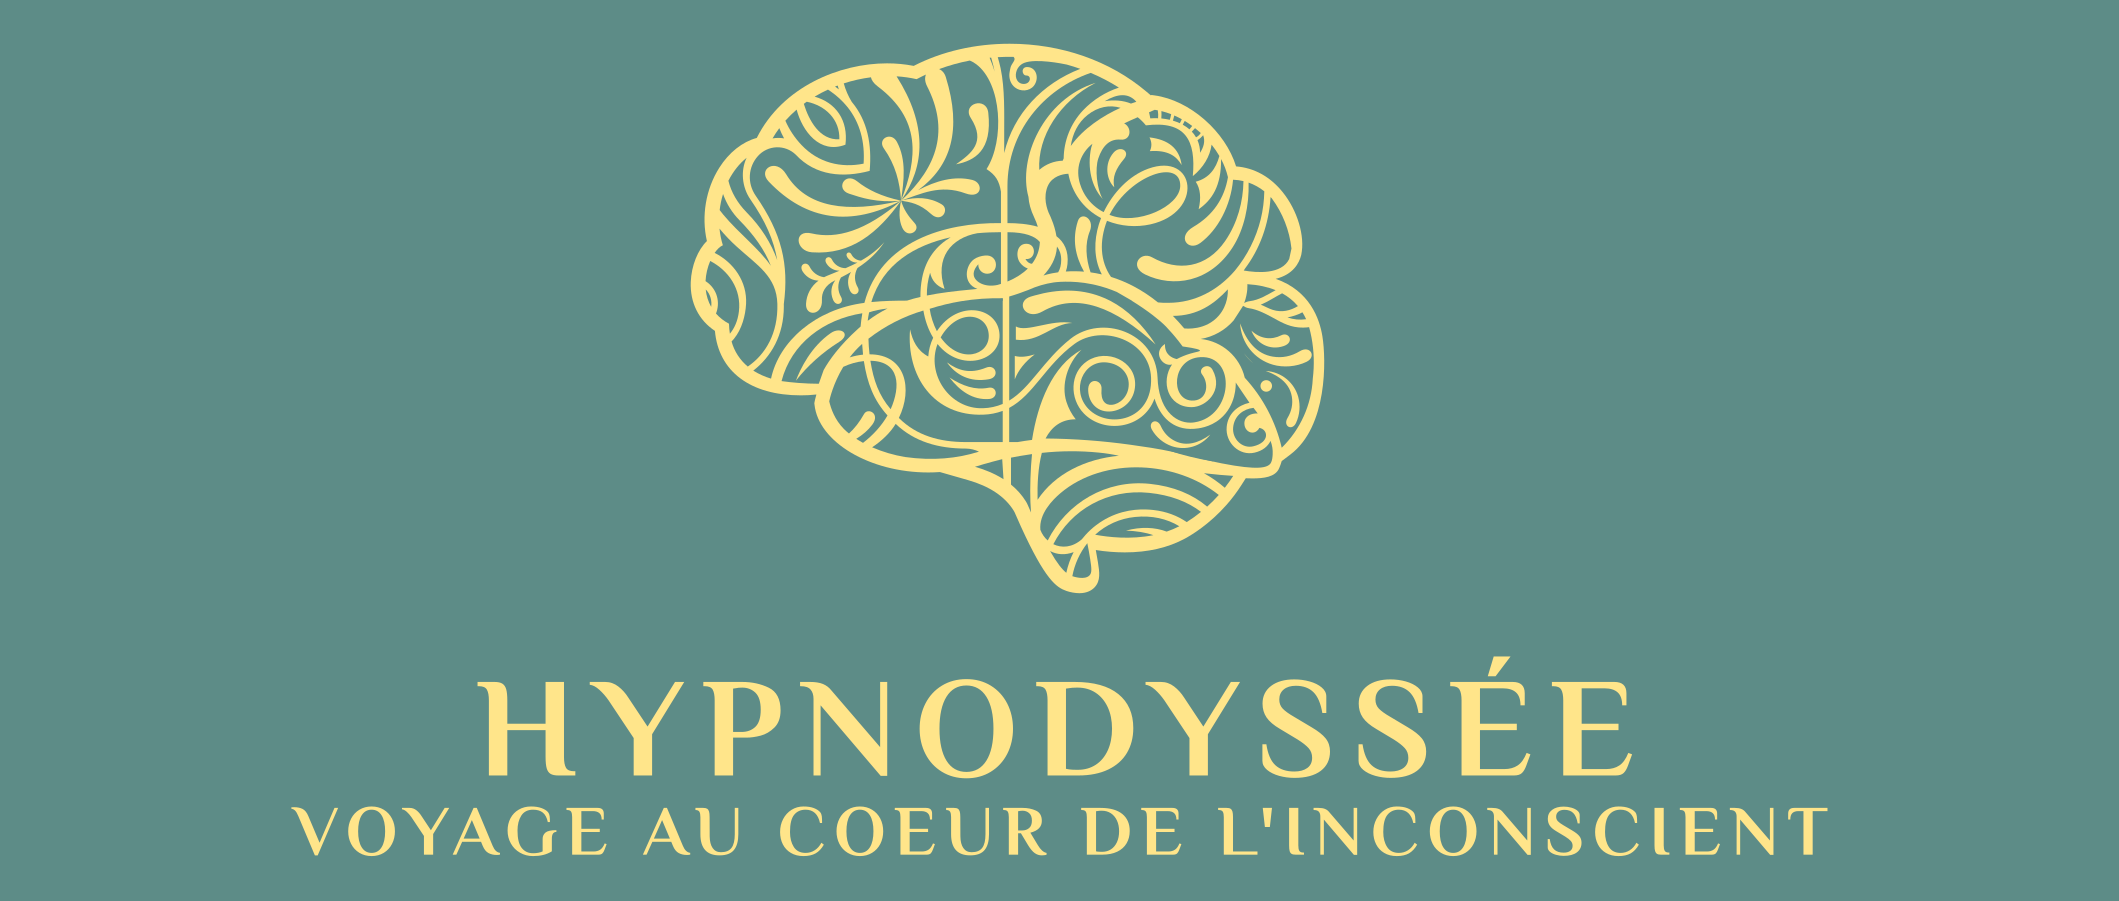 Hypnodyssée